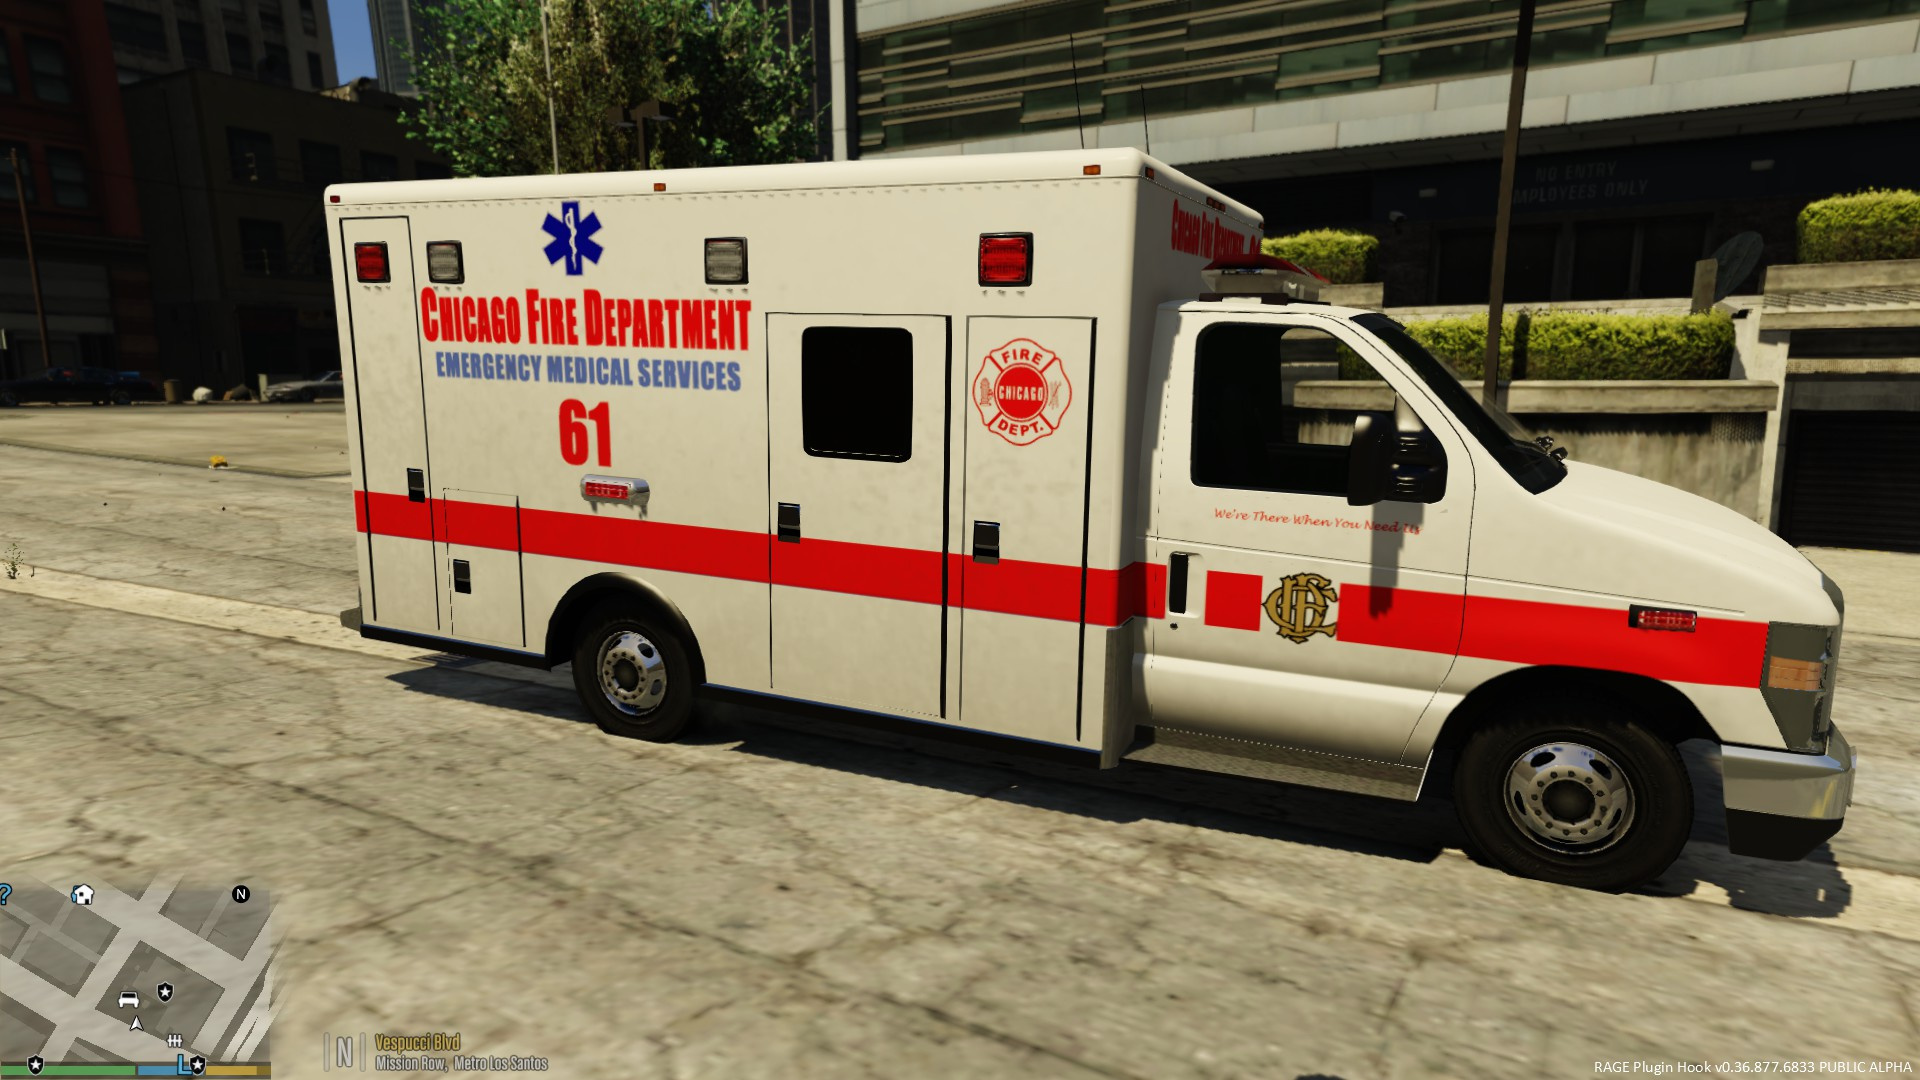 gta5救护车图片